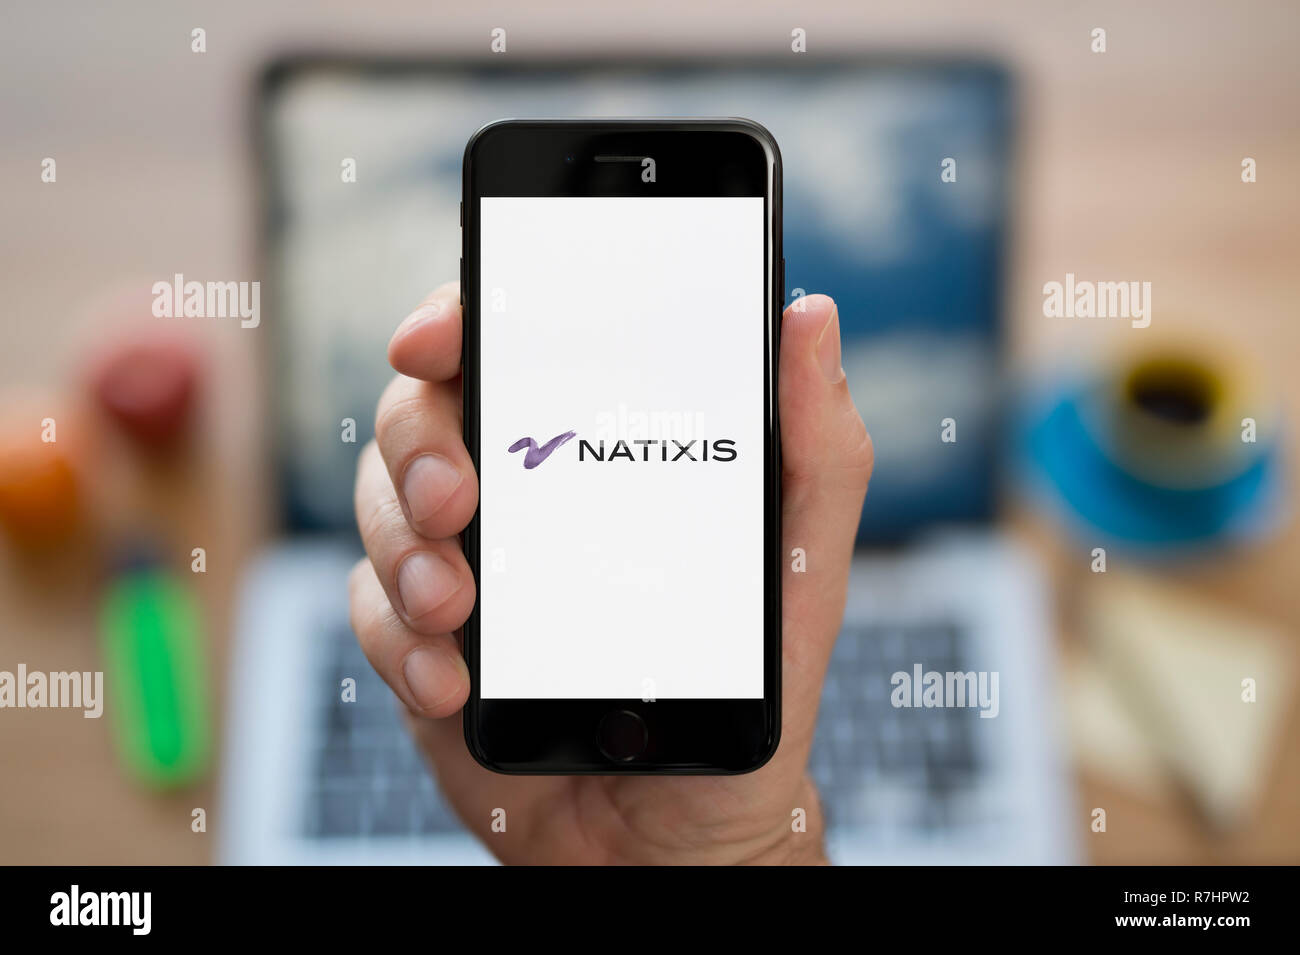 Ein Mann schaut auf seinem iPhone die zeigt die Natixis Logo (nur redaktionelle Nutzung). Stockfoto